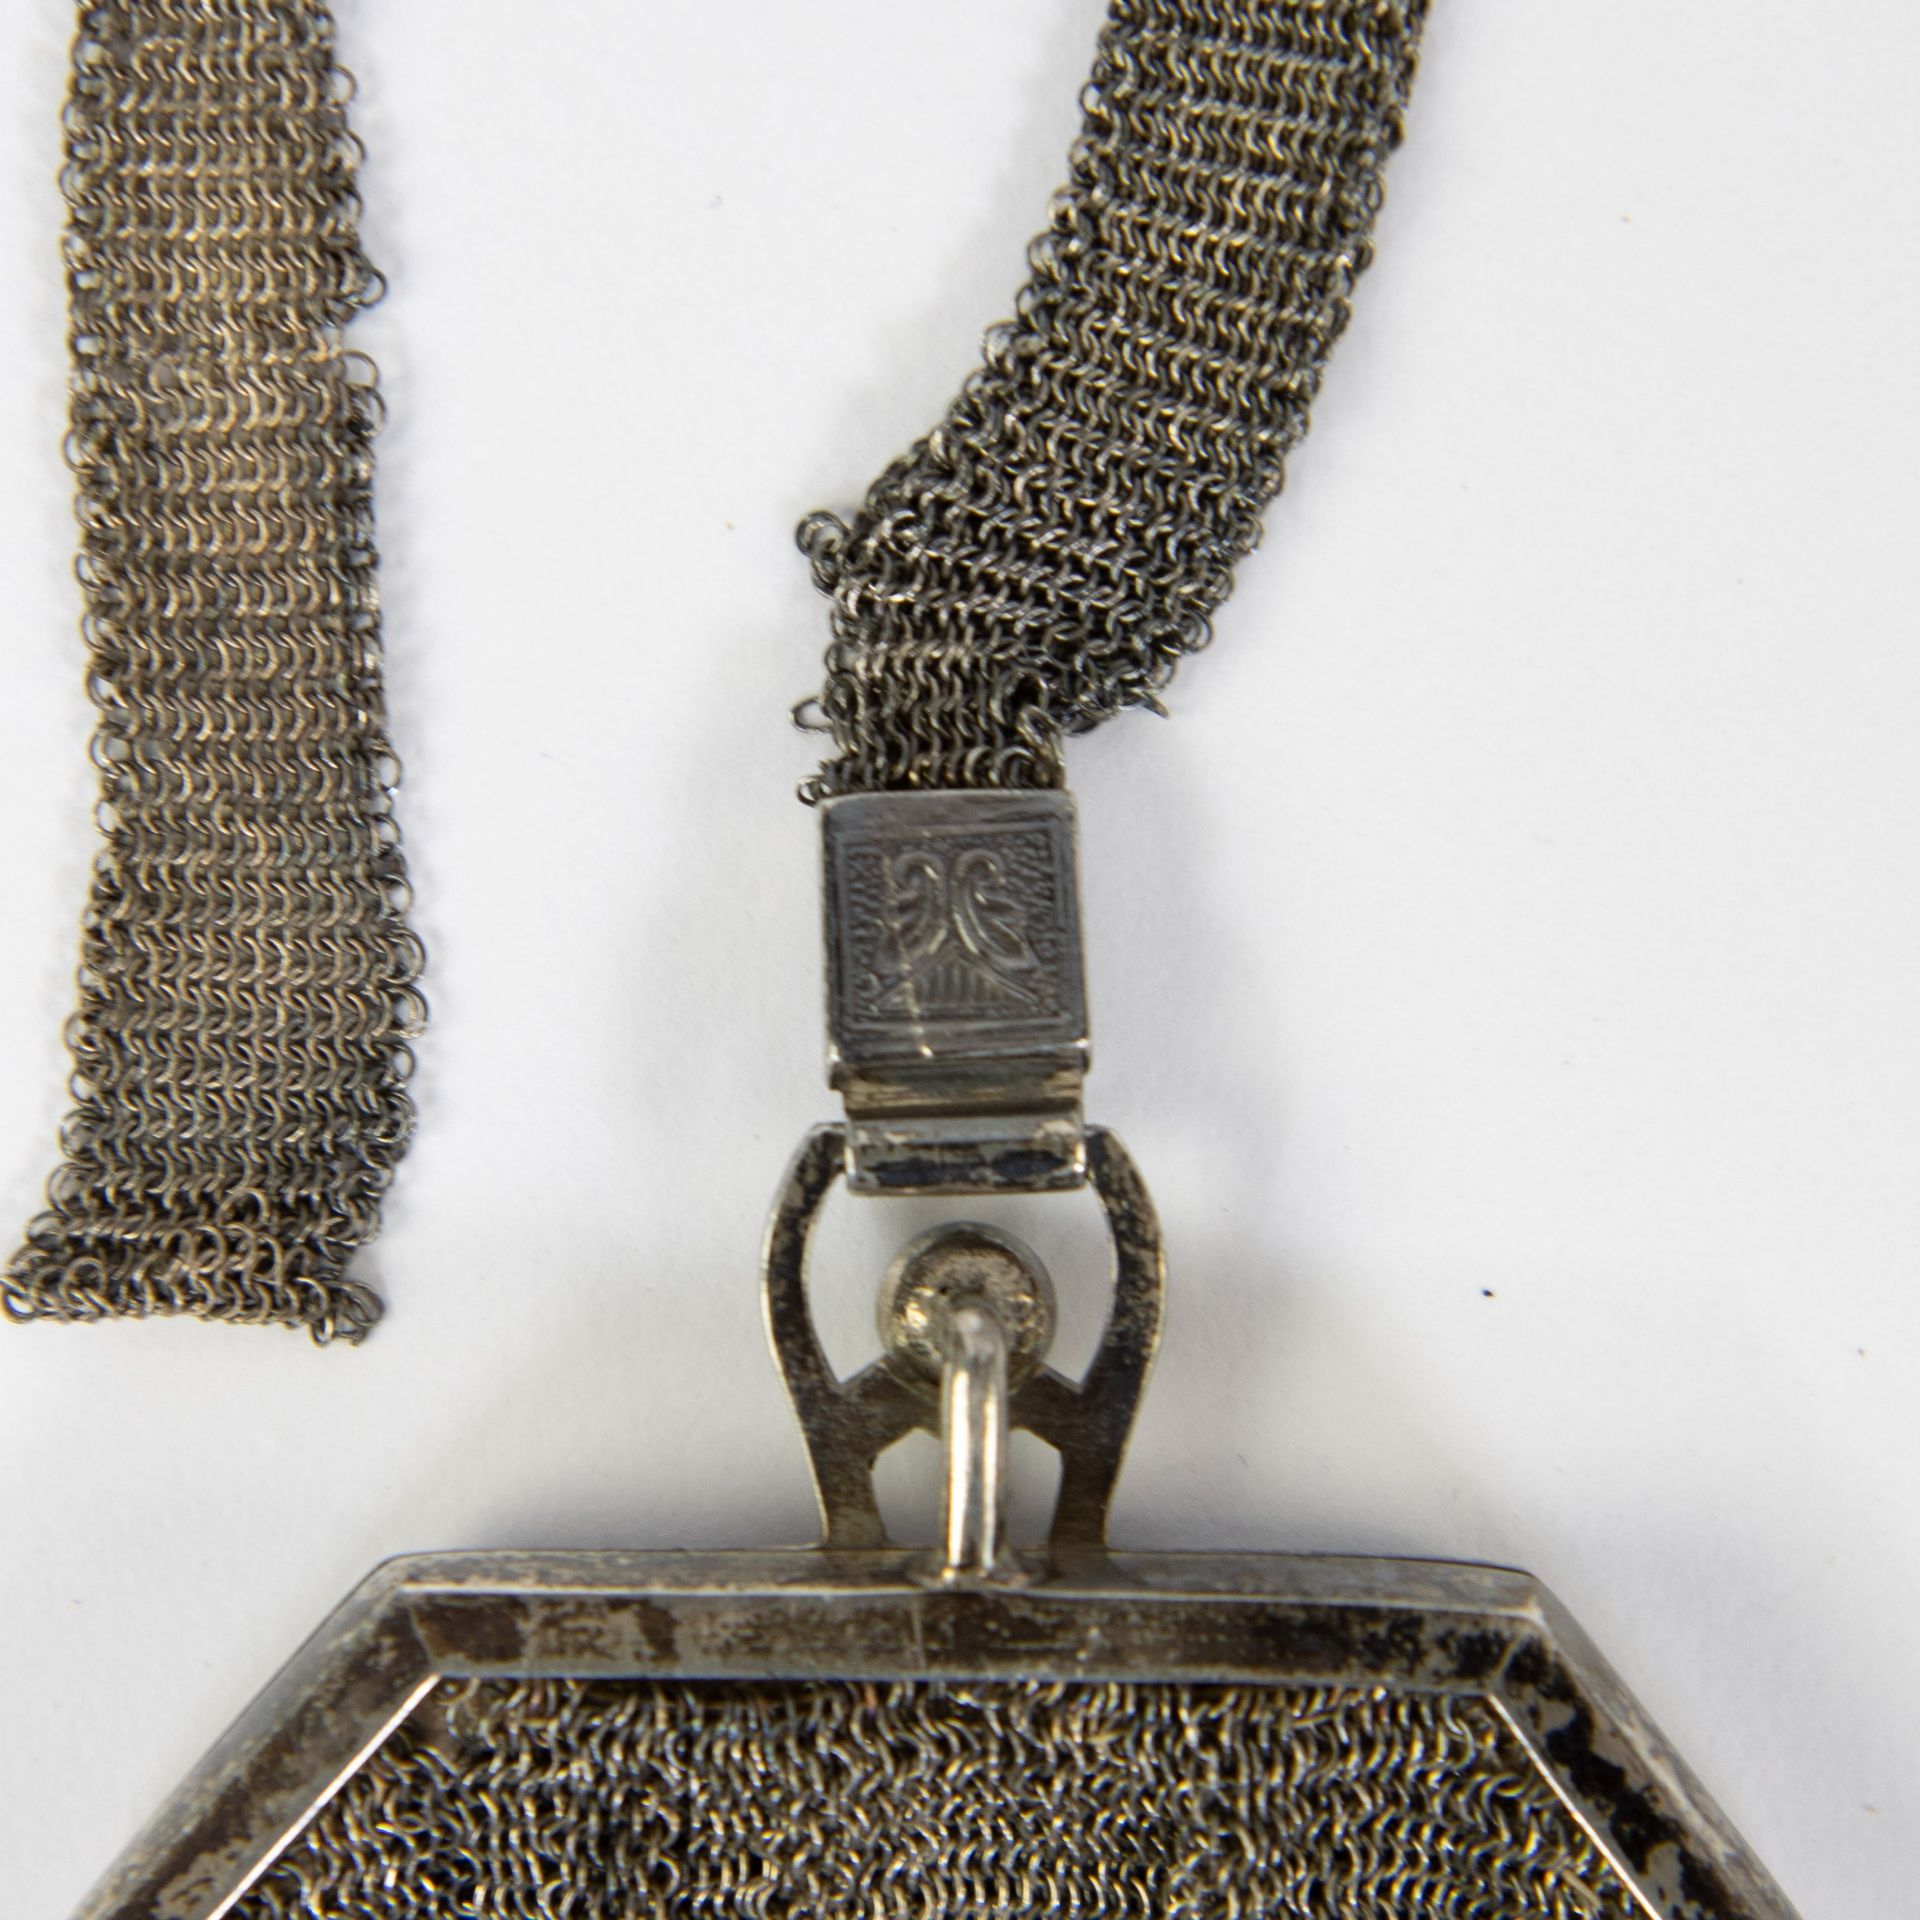 Art Deco handbag silver with bakelite closure + small handbag silver - Image 2 of 3